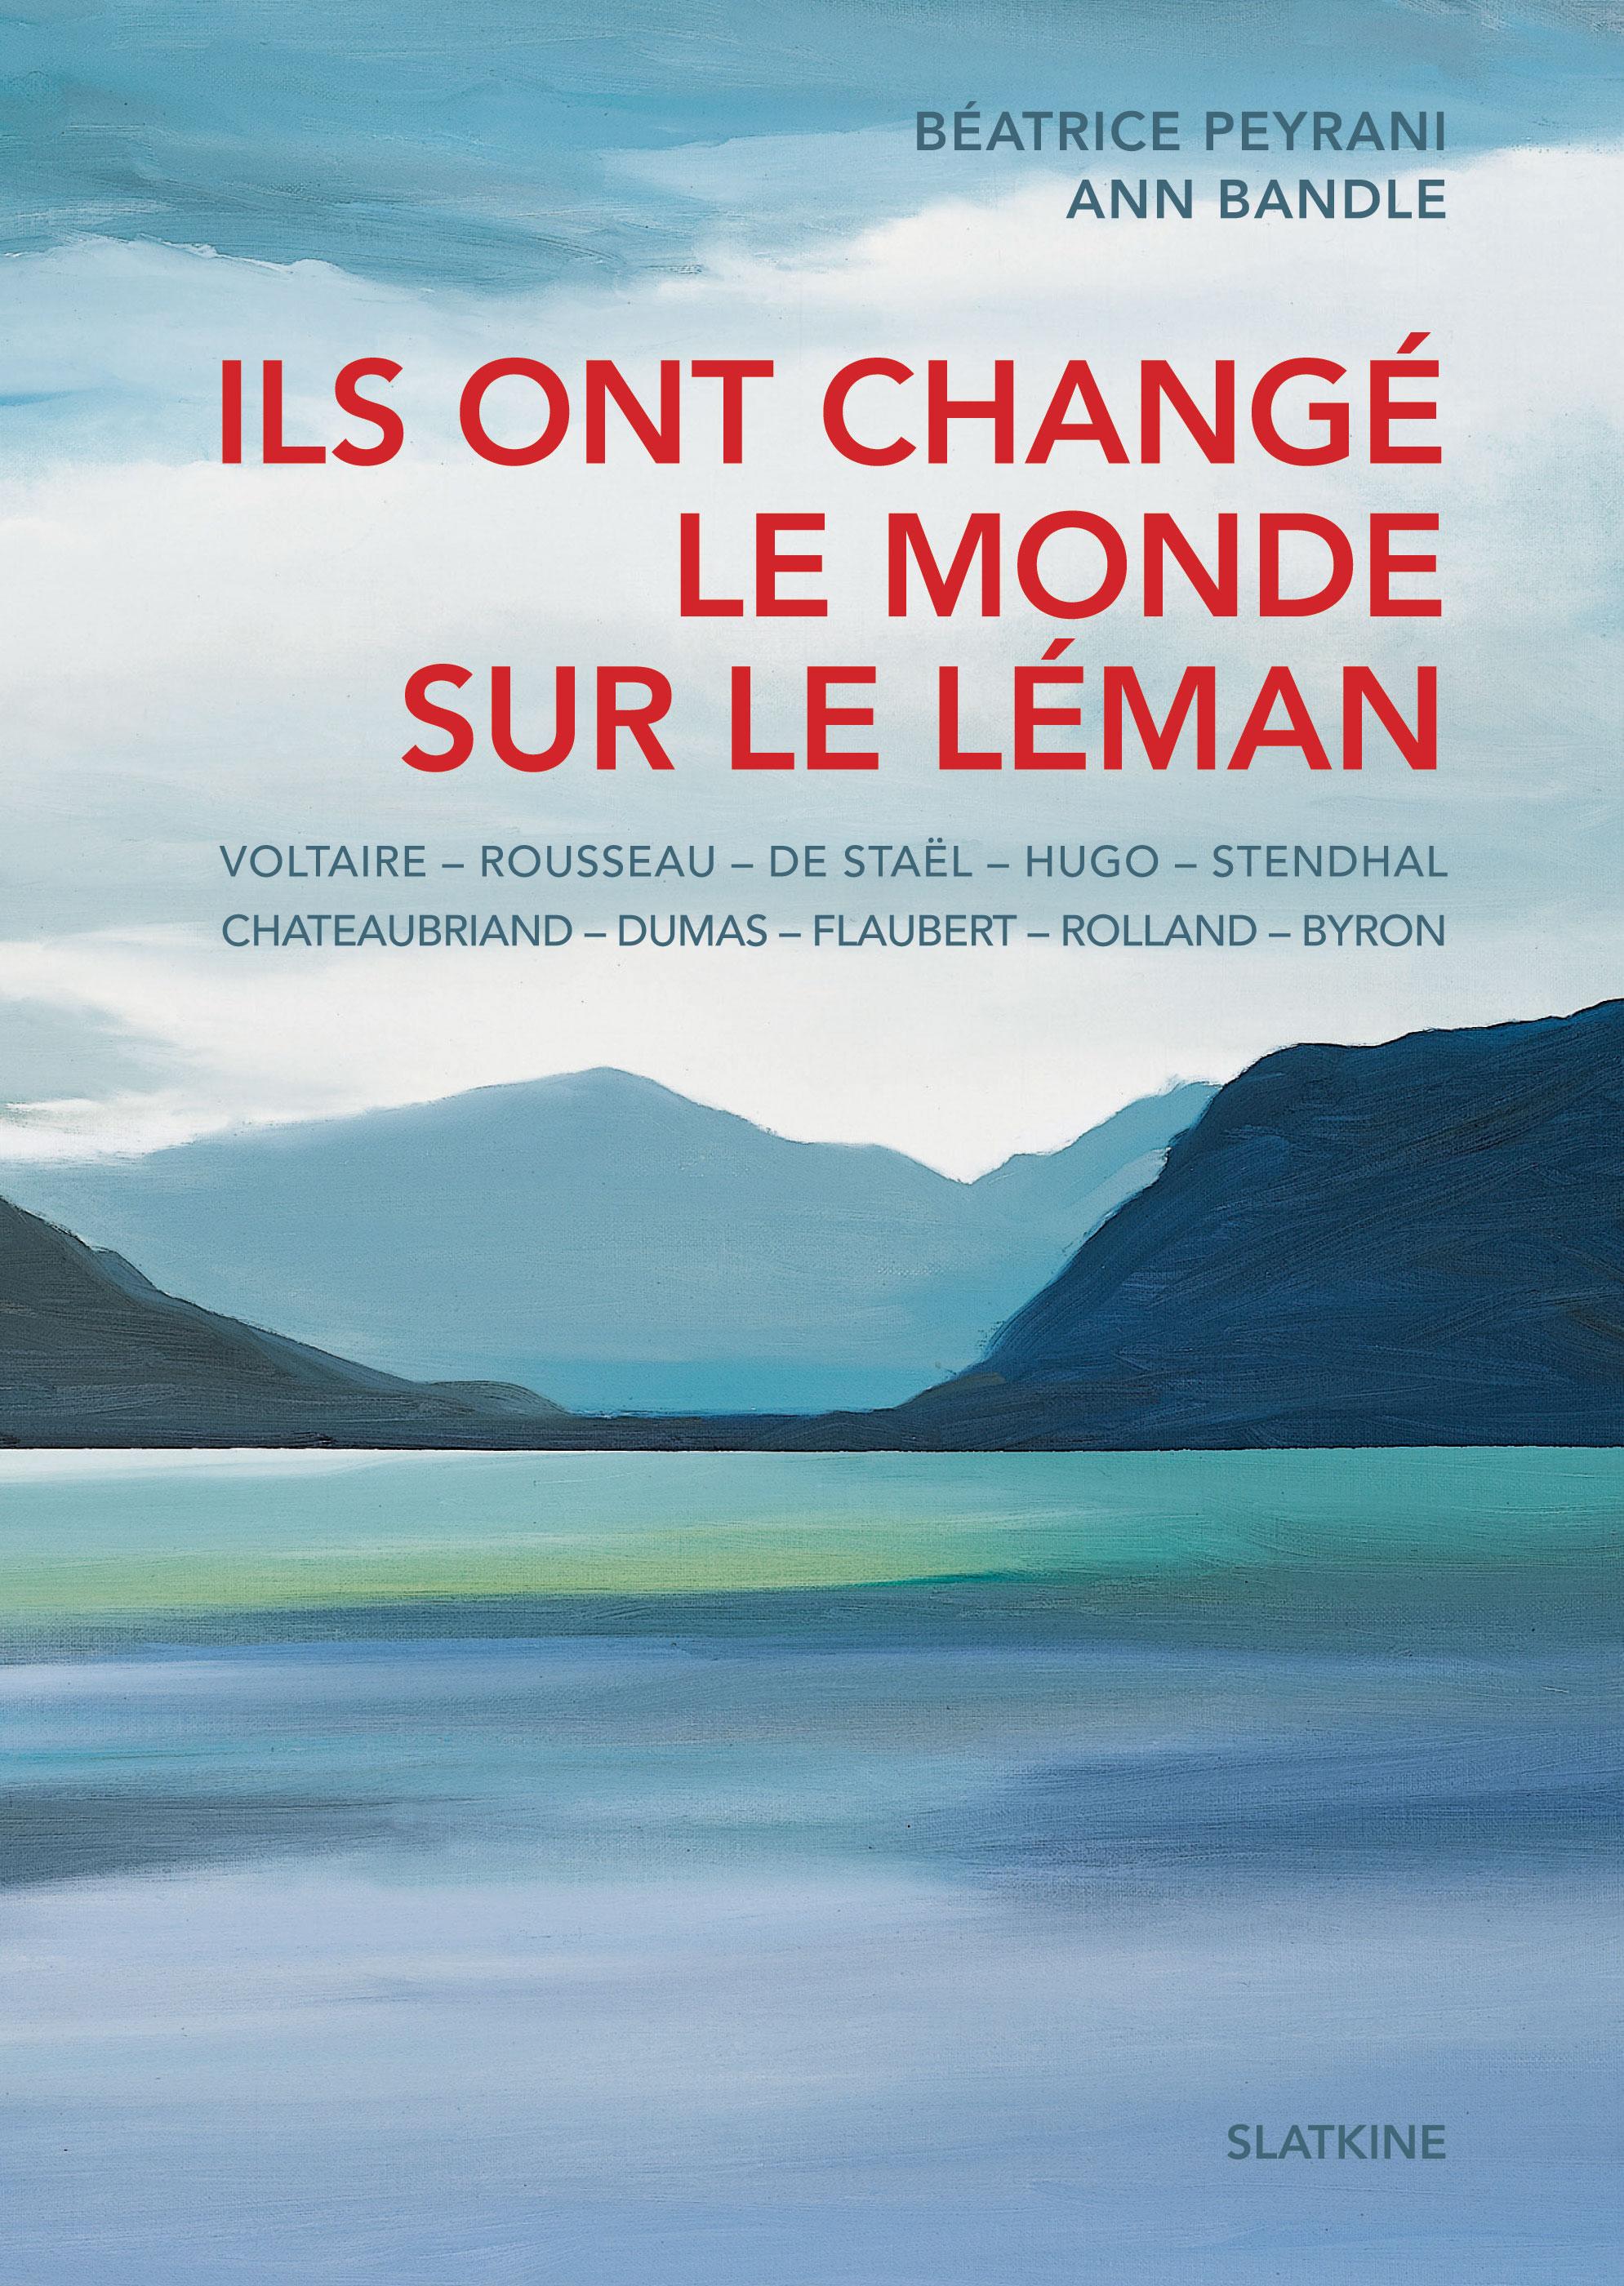 Couverture du livre "Ils ont changé le monde sur le Léman". [Editions Slatkine]